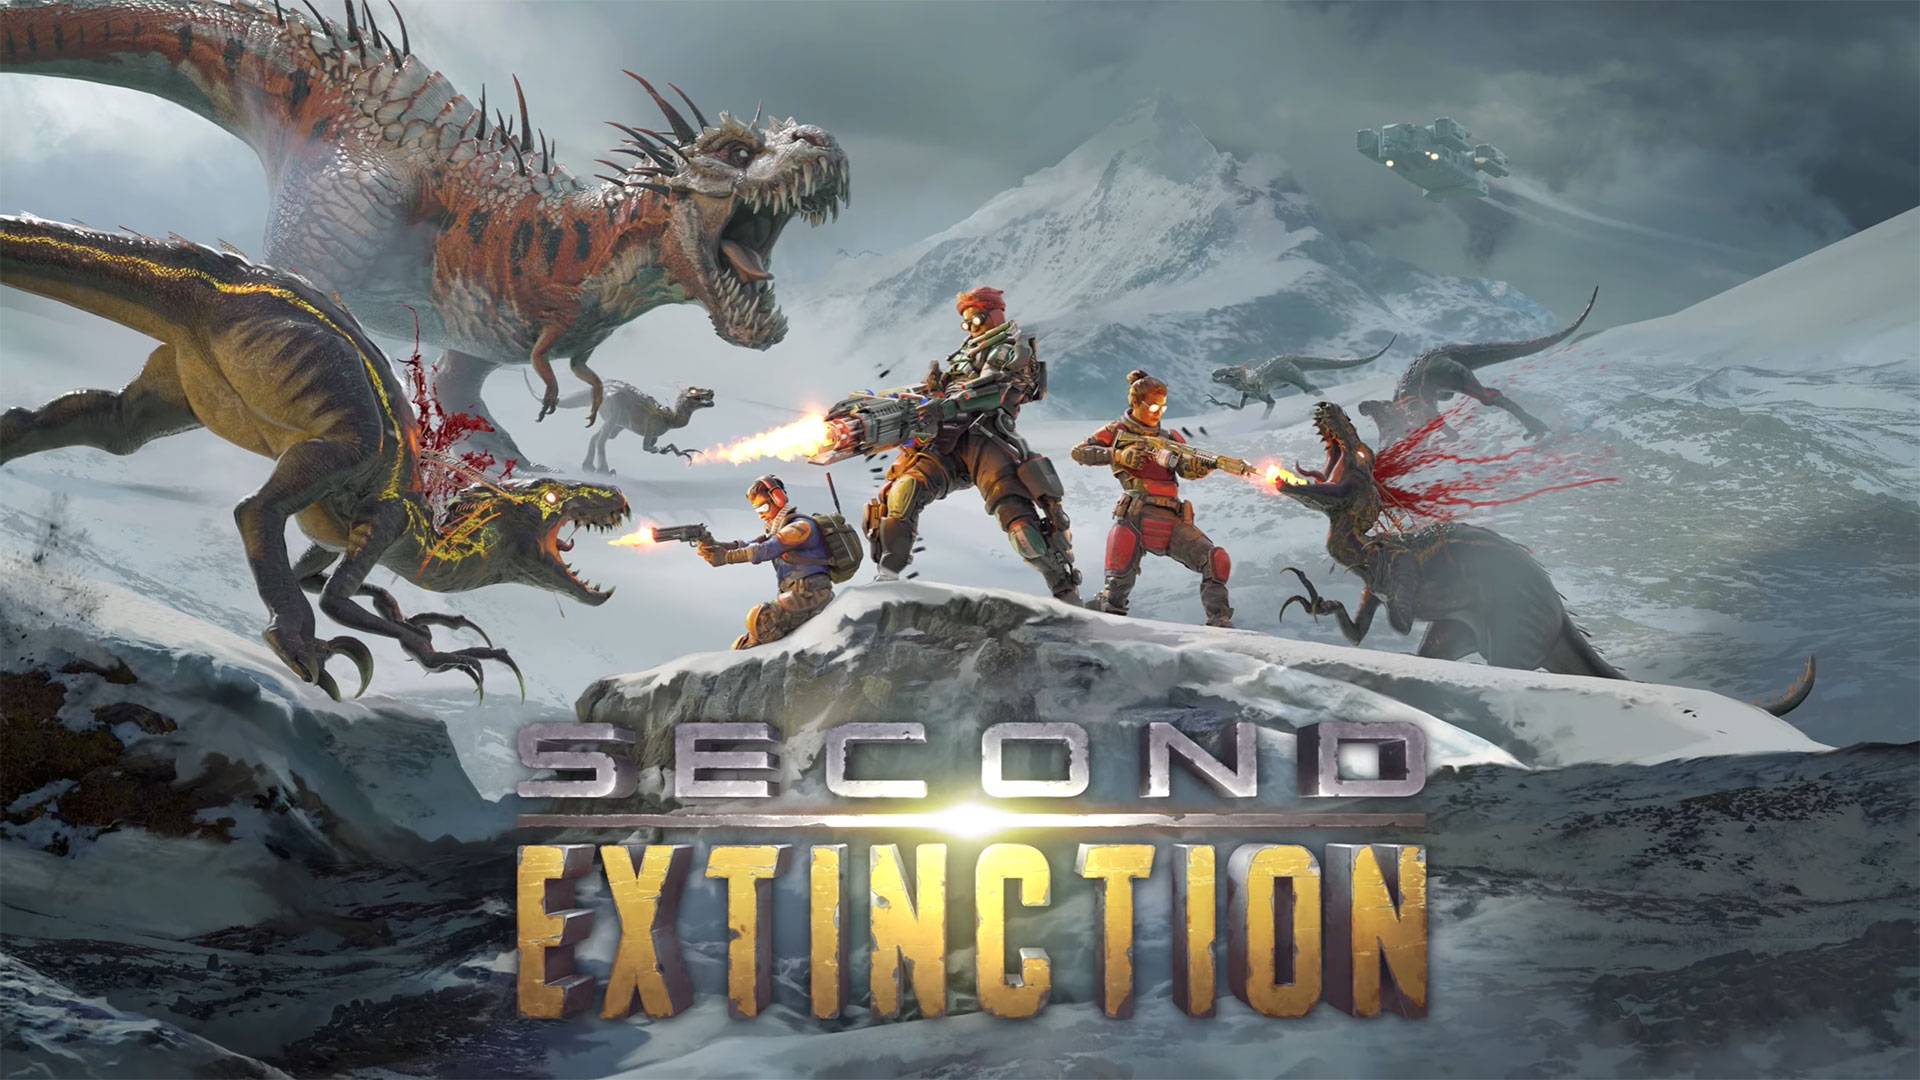 Epic Games Store solta os jogos MORDHAU e Second Extinction de graça -  Drops de Jogos